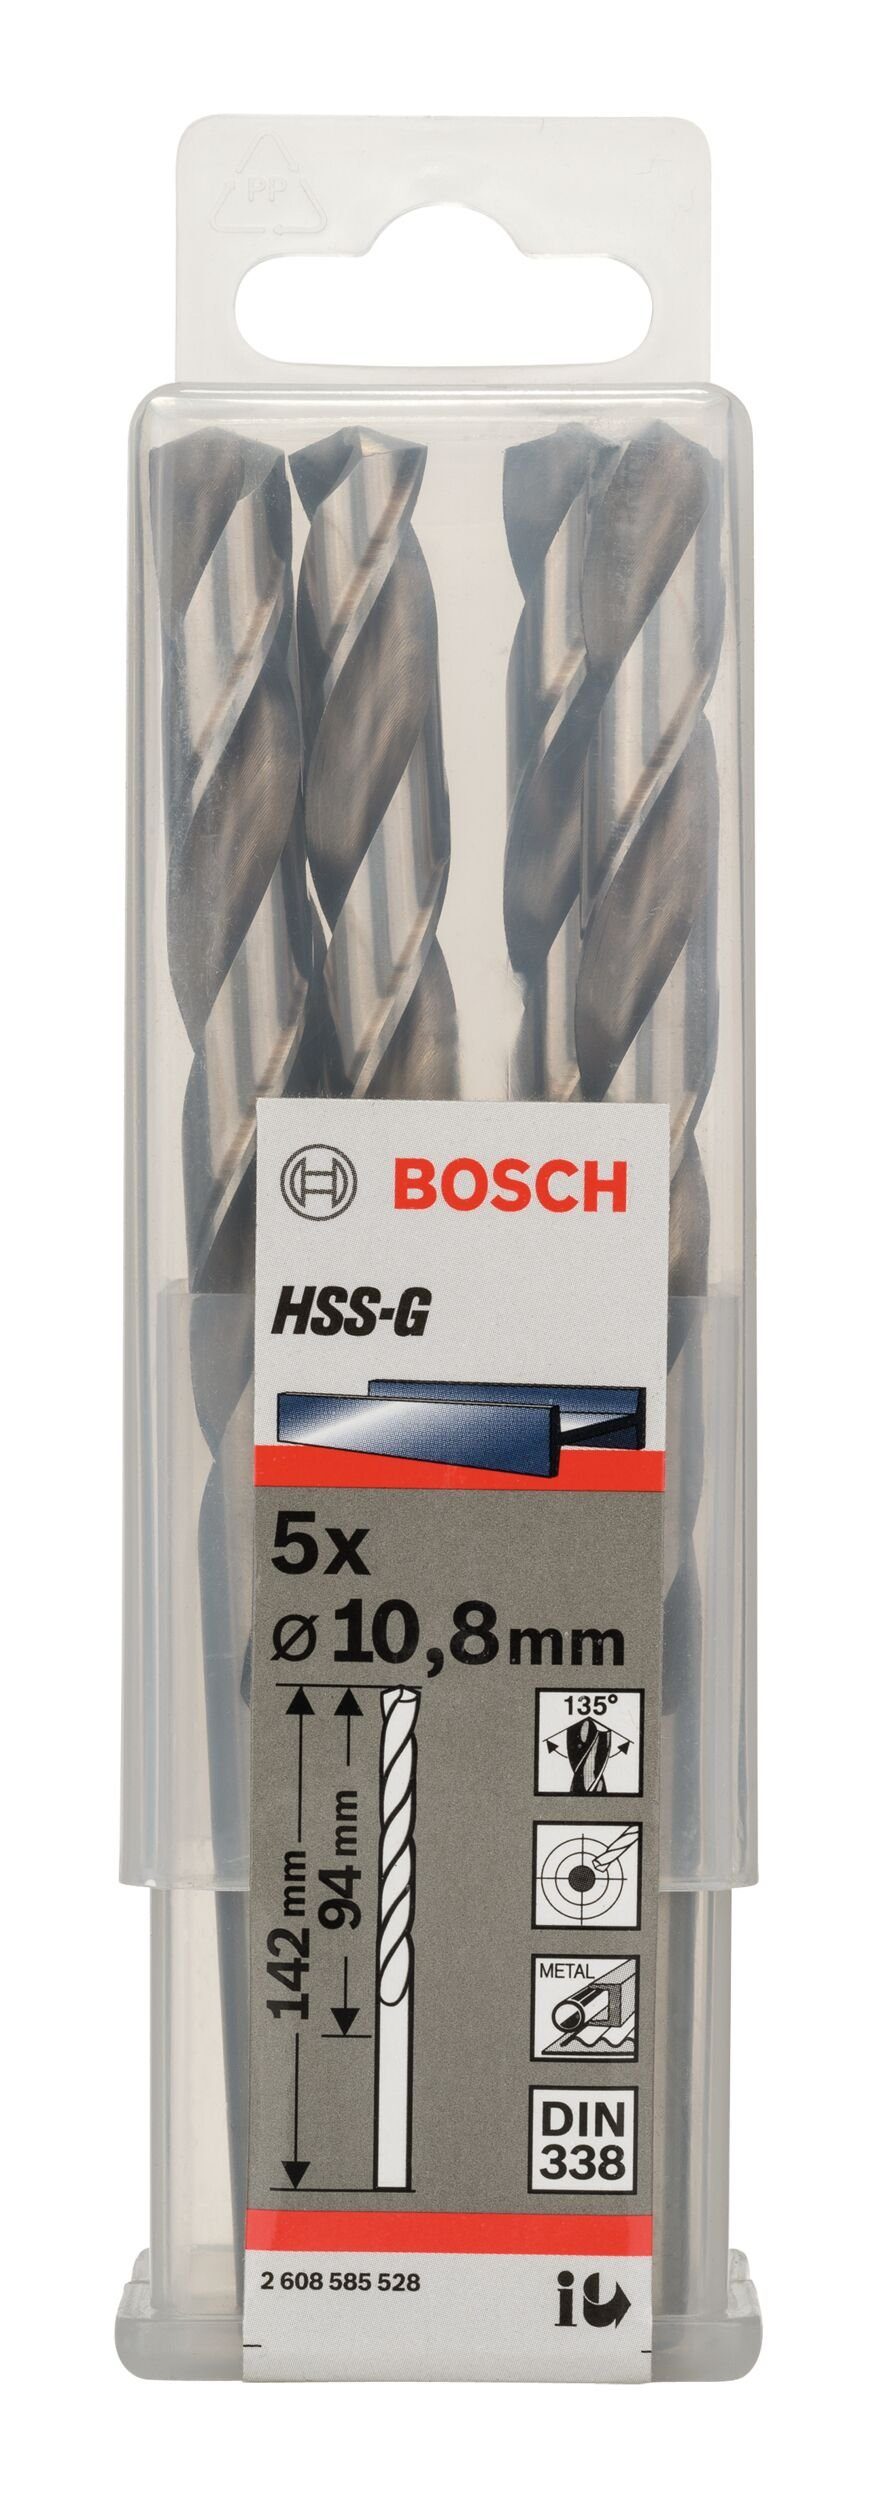 HSS-G 142 mm (DIN x (5 Stück), 338) - Metallbohrer, 10,8 94 BOSCH - x 5er-Pack